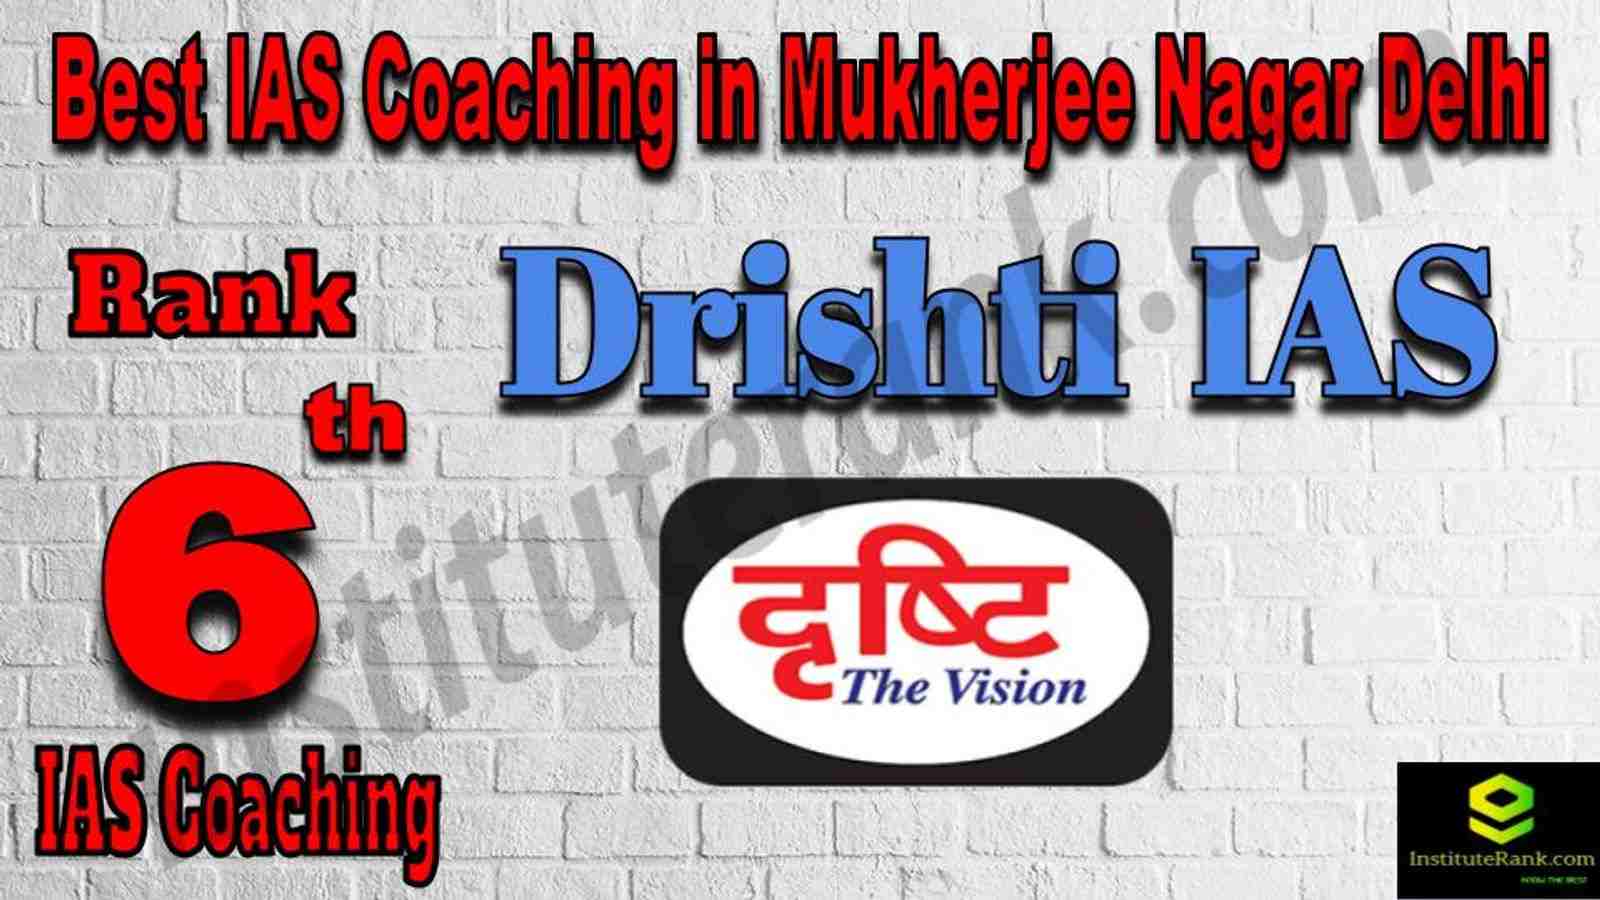 6th Best IAS Coaching in Mukherjee Nagar 